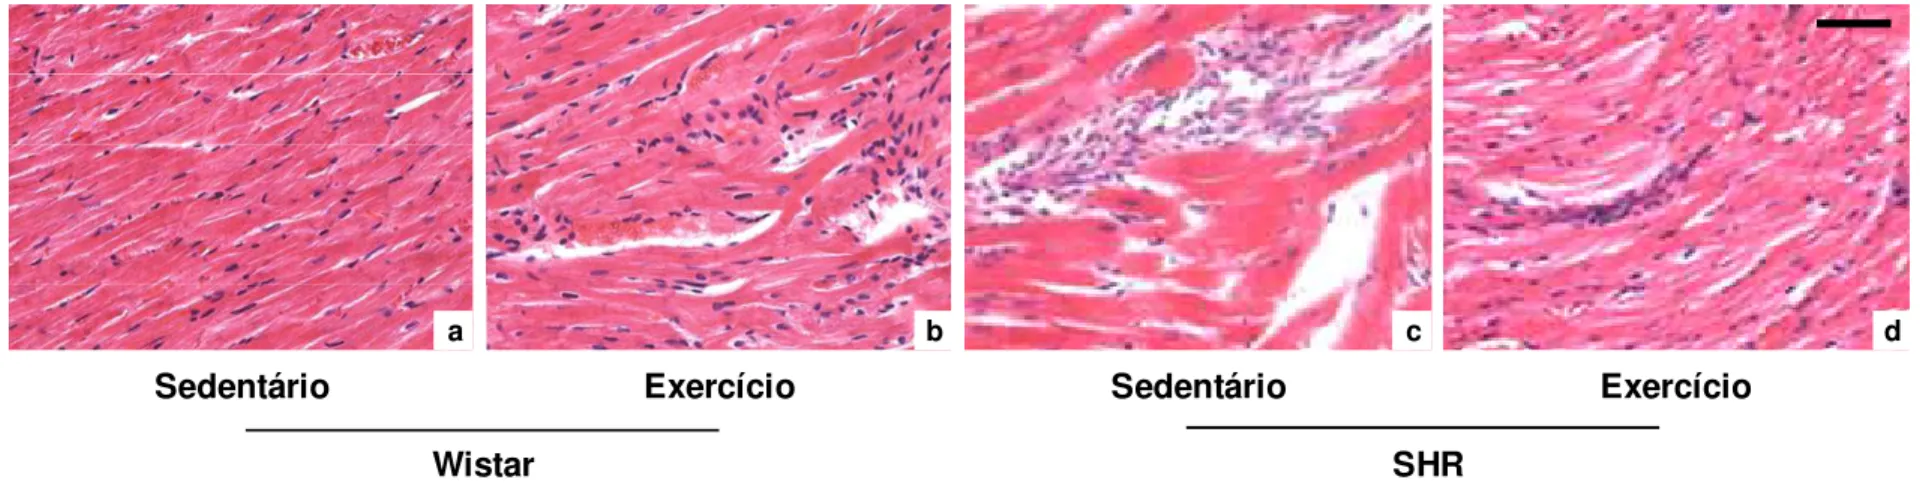 Figura 4: Fotomicrografias de cortes histológicos do ventrículo esquerdo de ratos normotensos e hipertensos